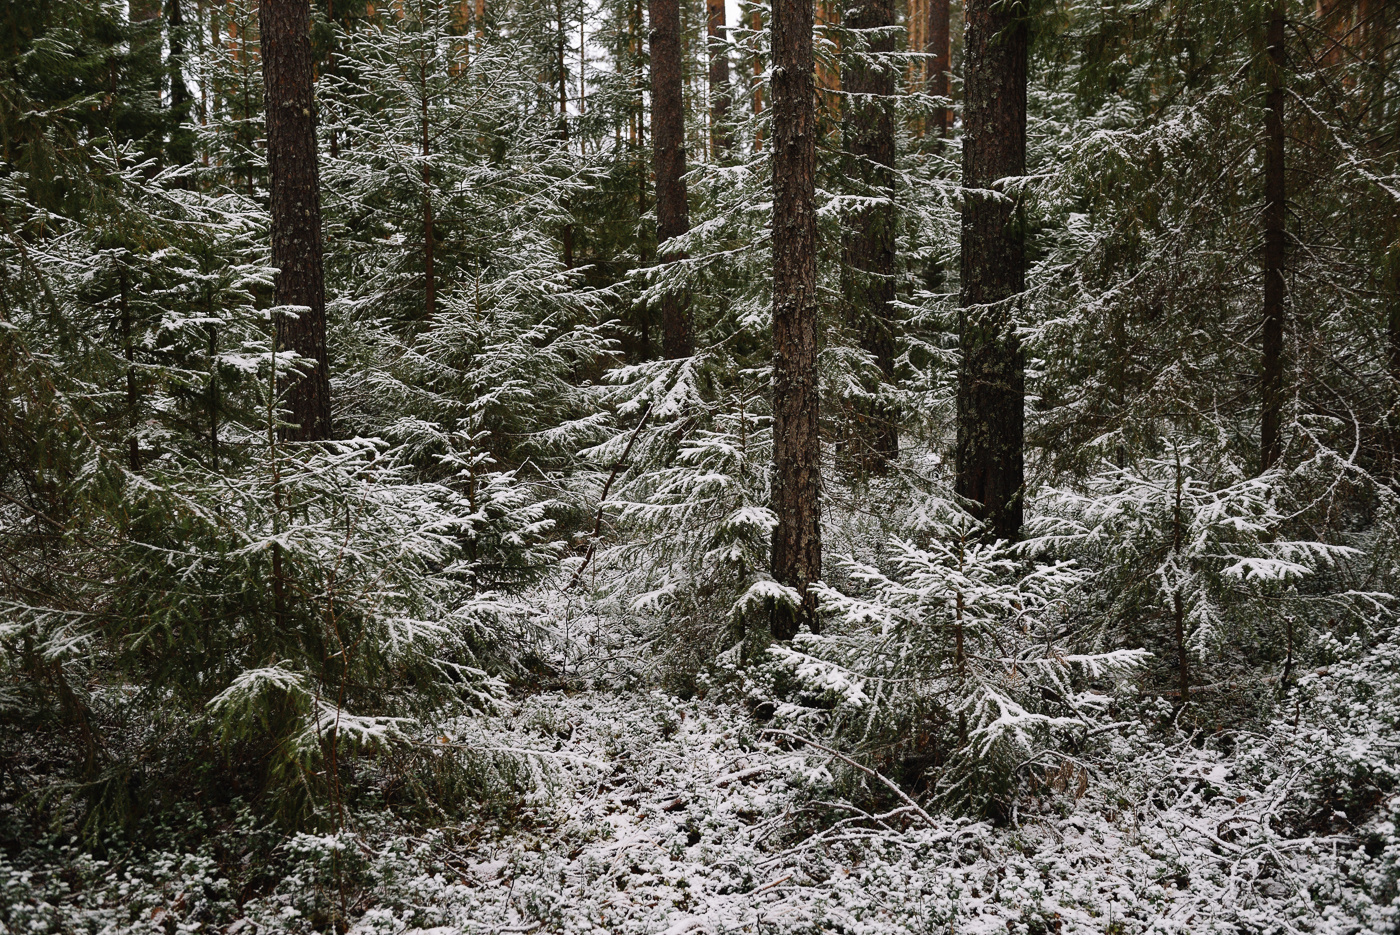 *** осень зима лес снег елки ели ель иней холод мороз пейзаж живописный тени тьма темный сосна сосны